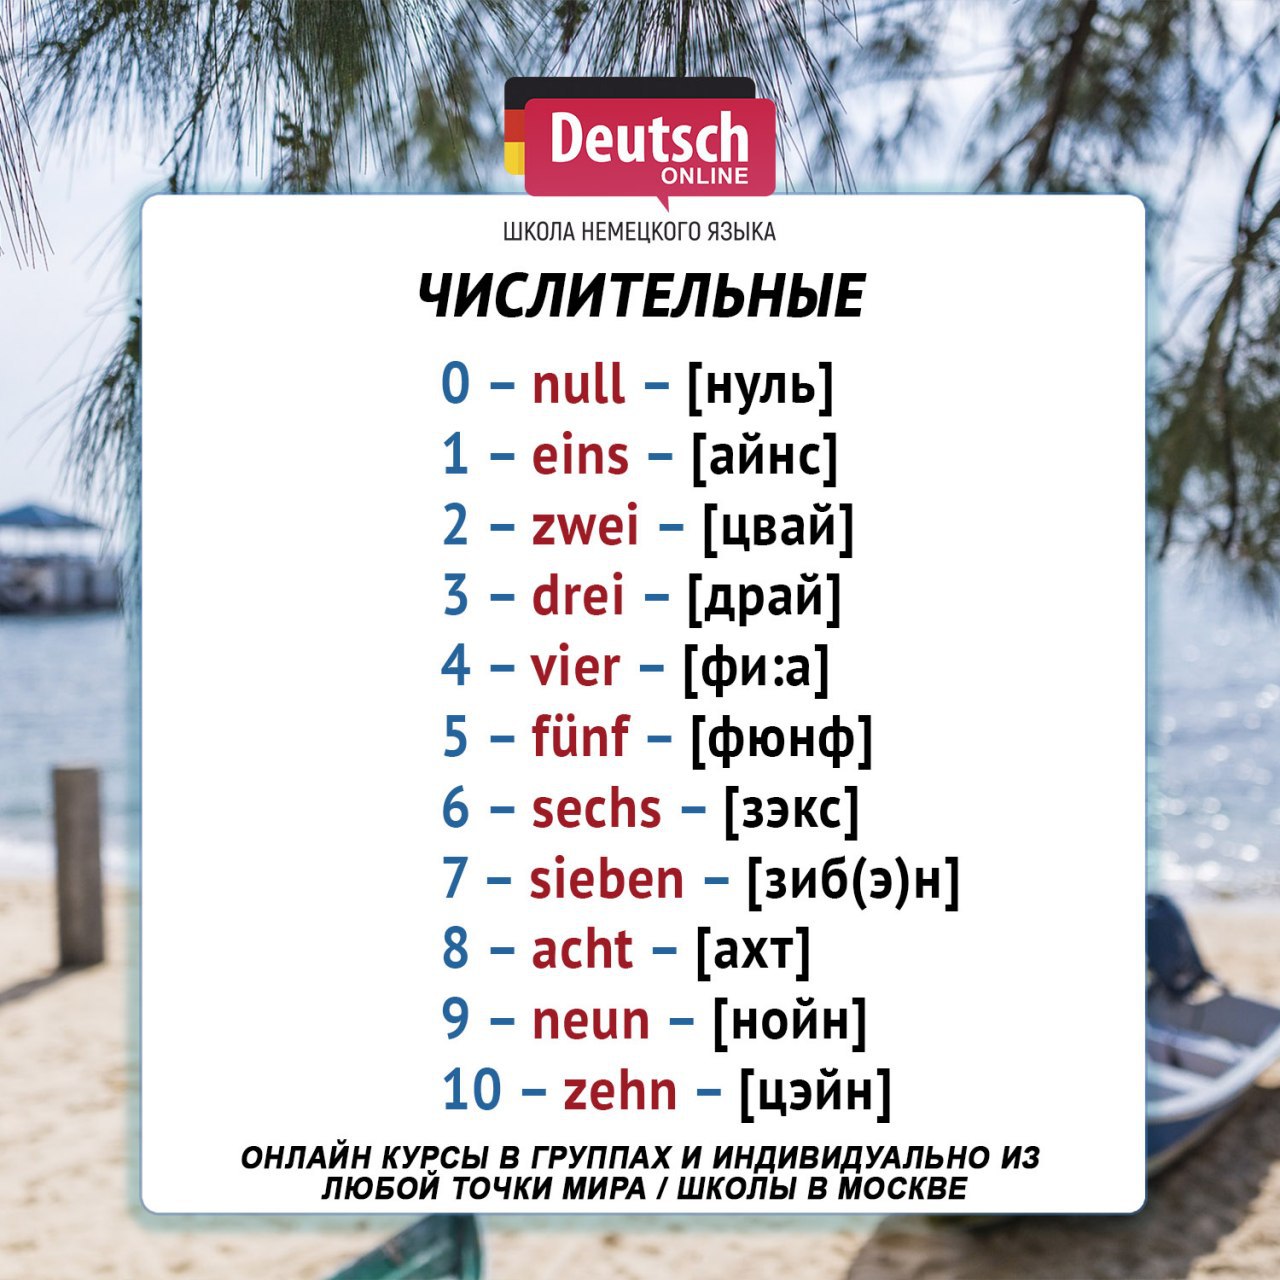 Числительные на немецком с произношением